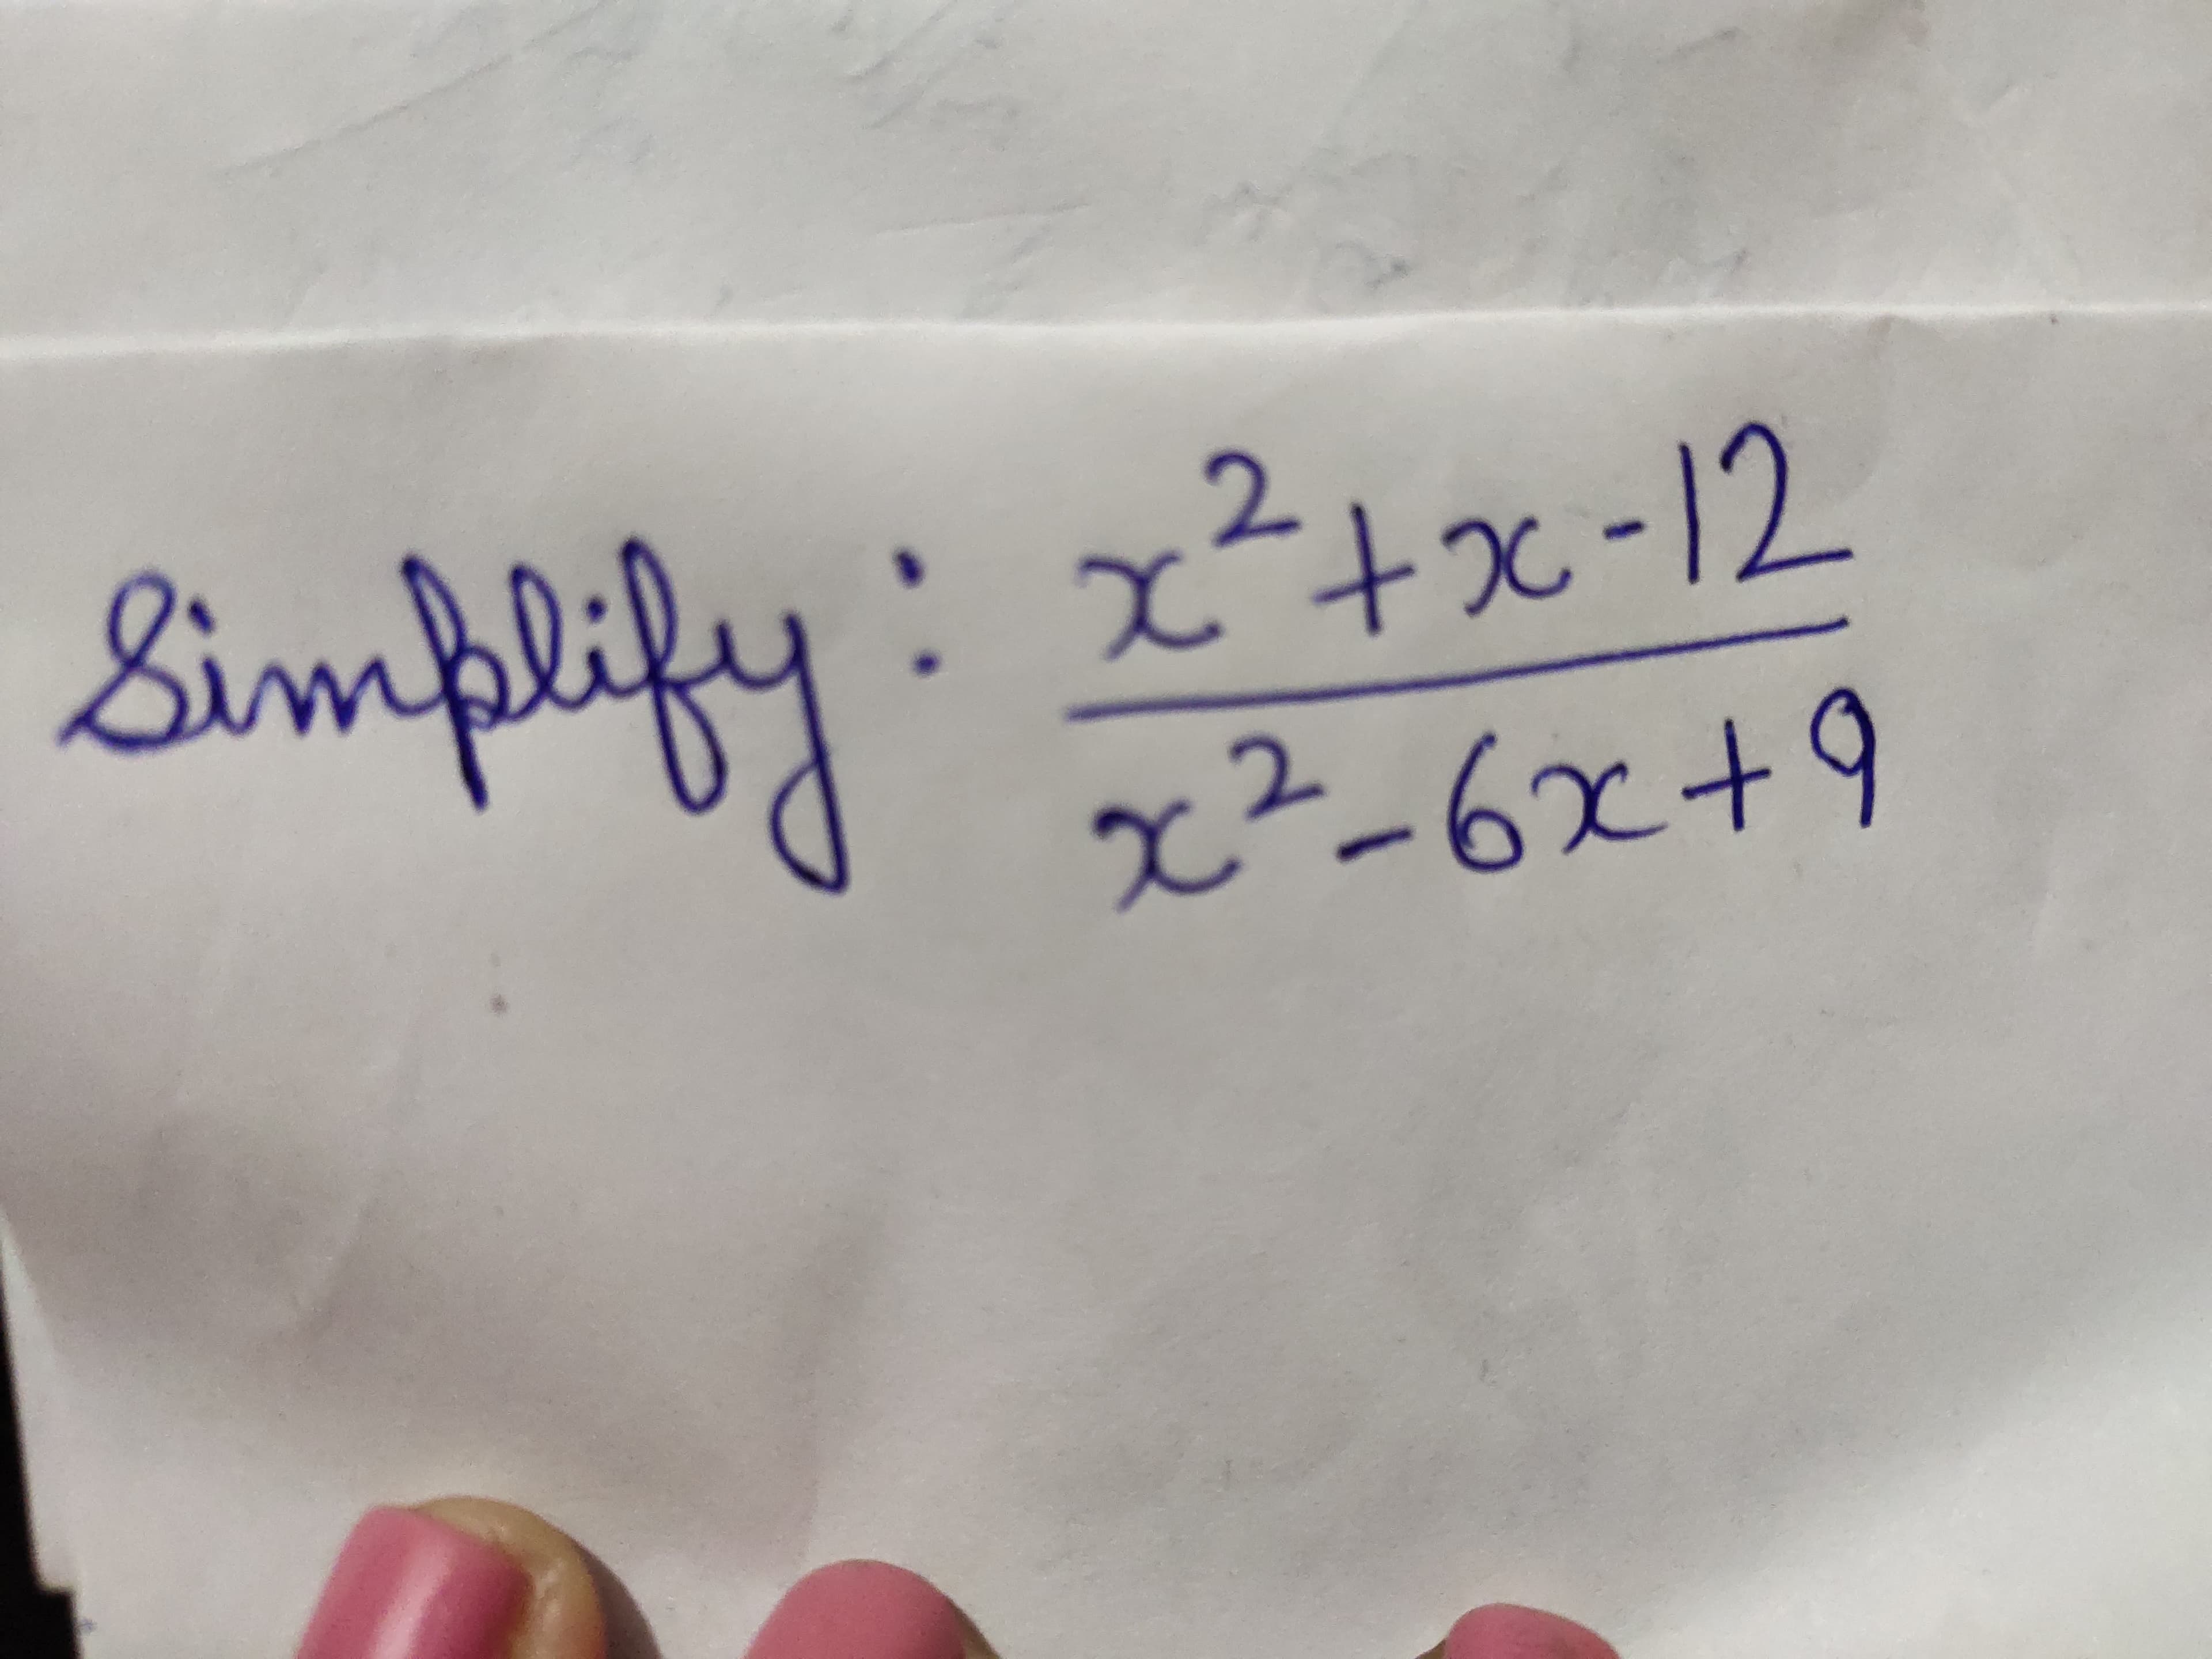 Bimplify:
:x²+x-12
x²-6x+9
